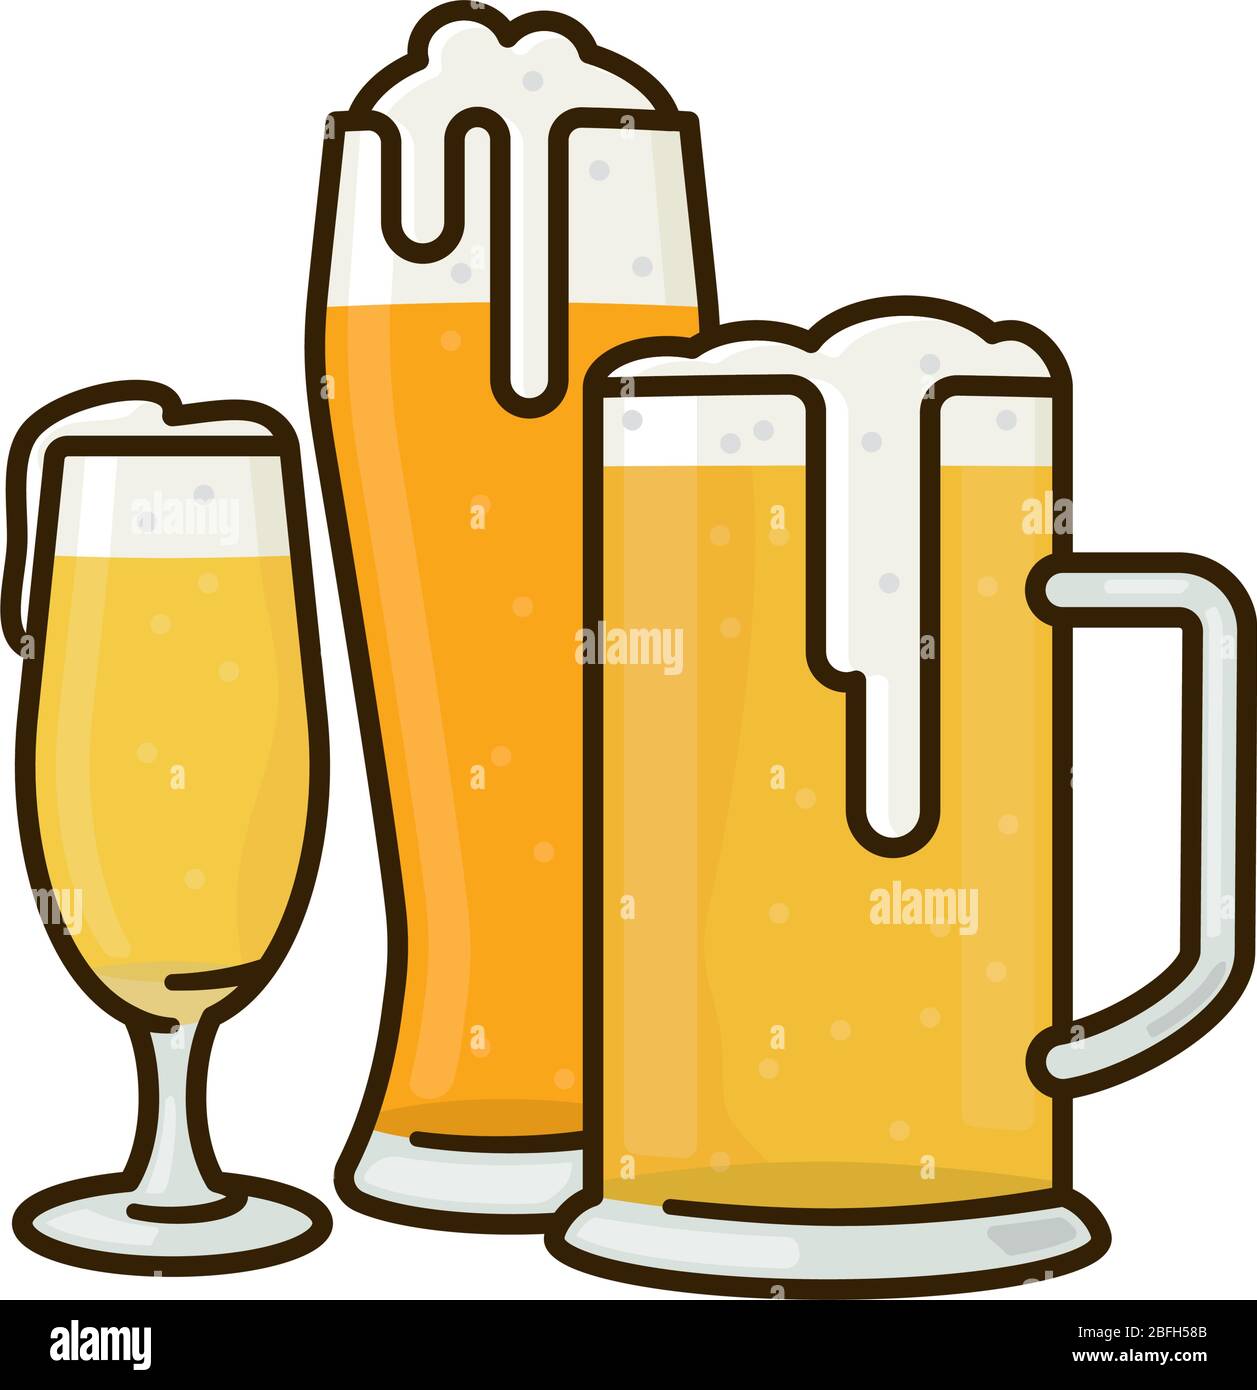 Varietà di bicchieri di birra isolato vettore illustrazione per la Giornata tedesca della birra il 23 aprile. Simbolo delle bevande alcoliche tradizionalmente preparate. Illustrazione Vettoriale